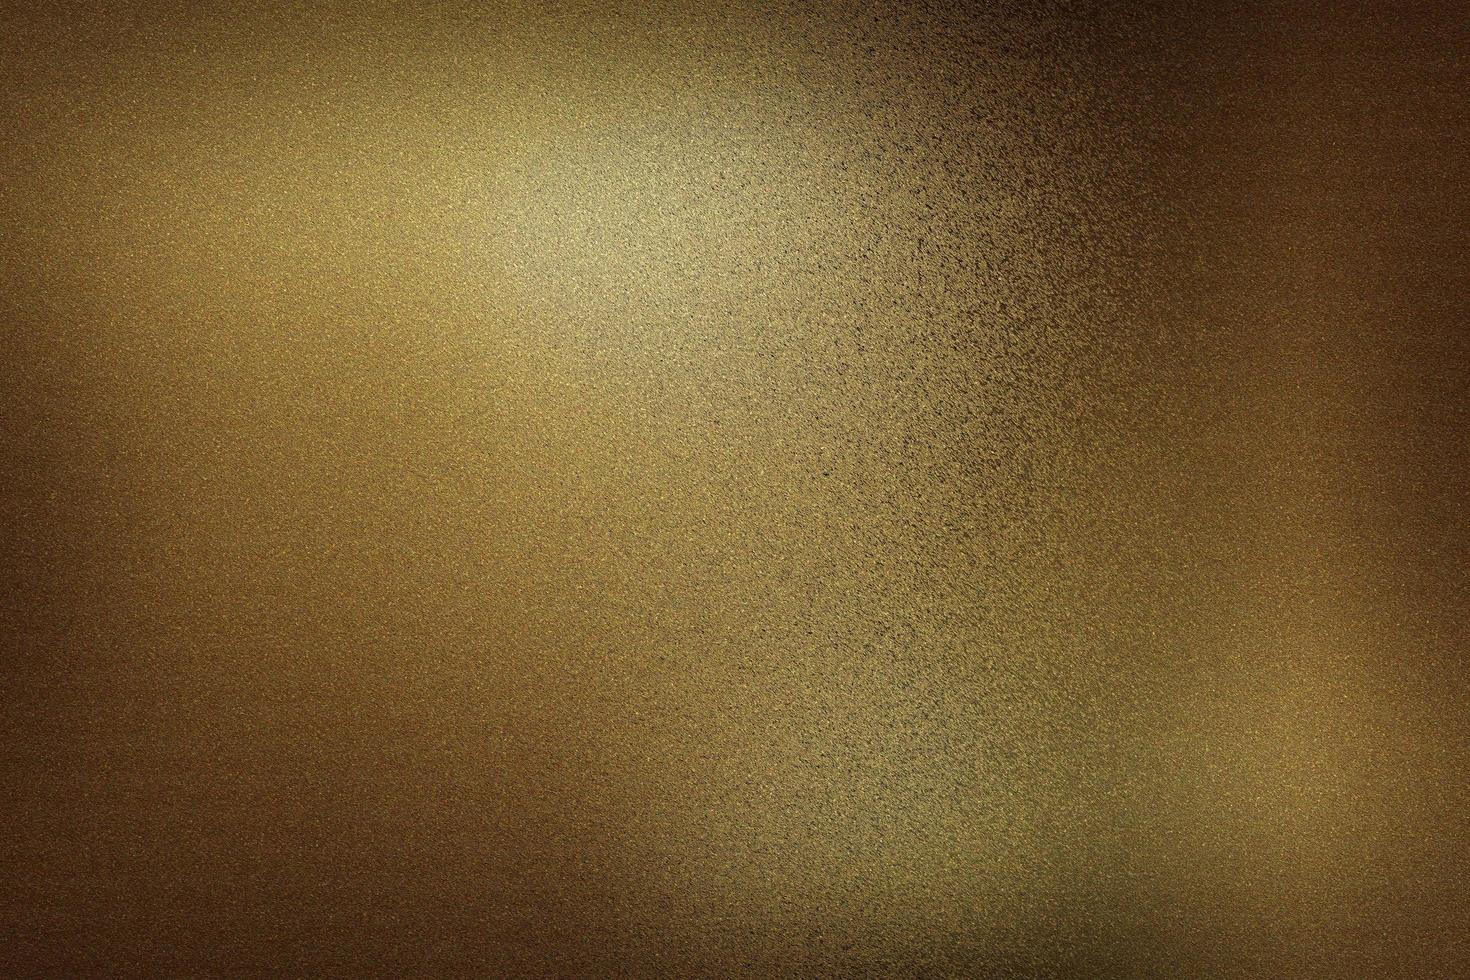 dunkelbraune folienmetallwand im dunklen raum, abstrakter texturhintergrund foto